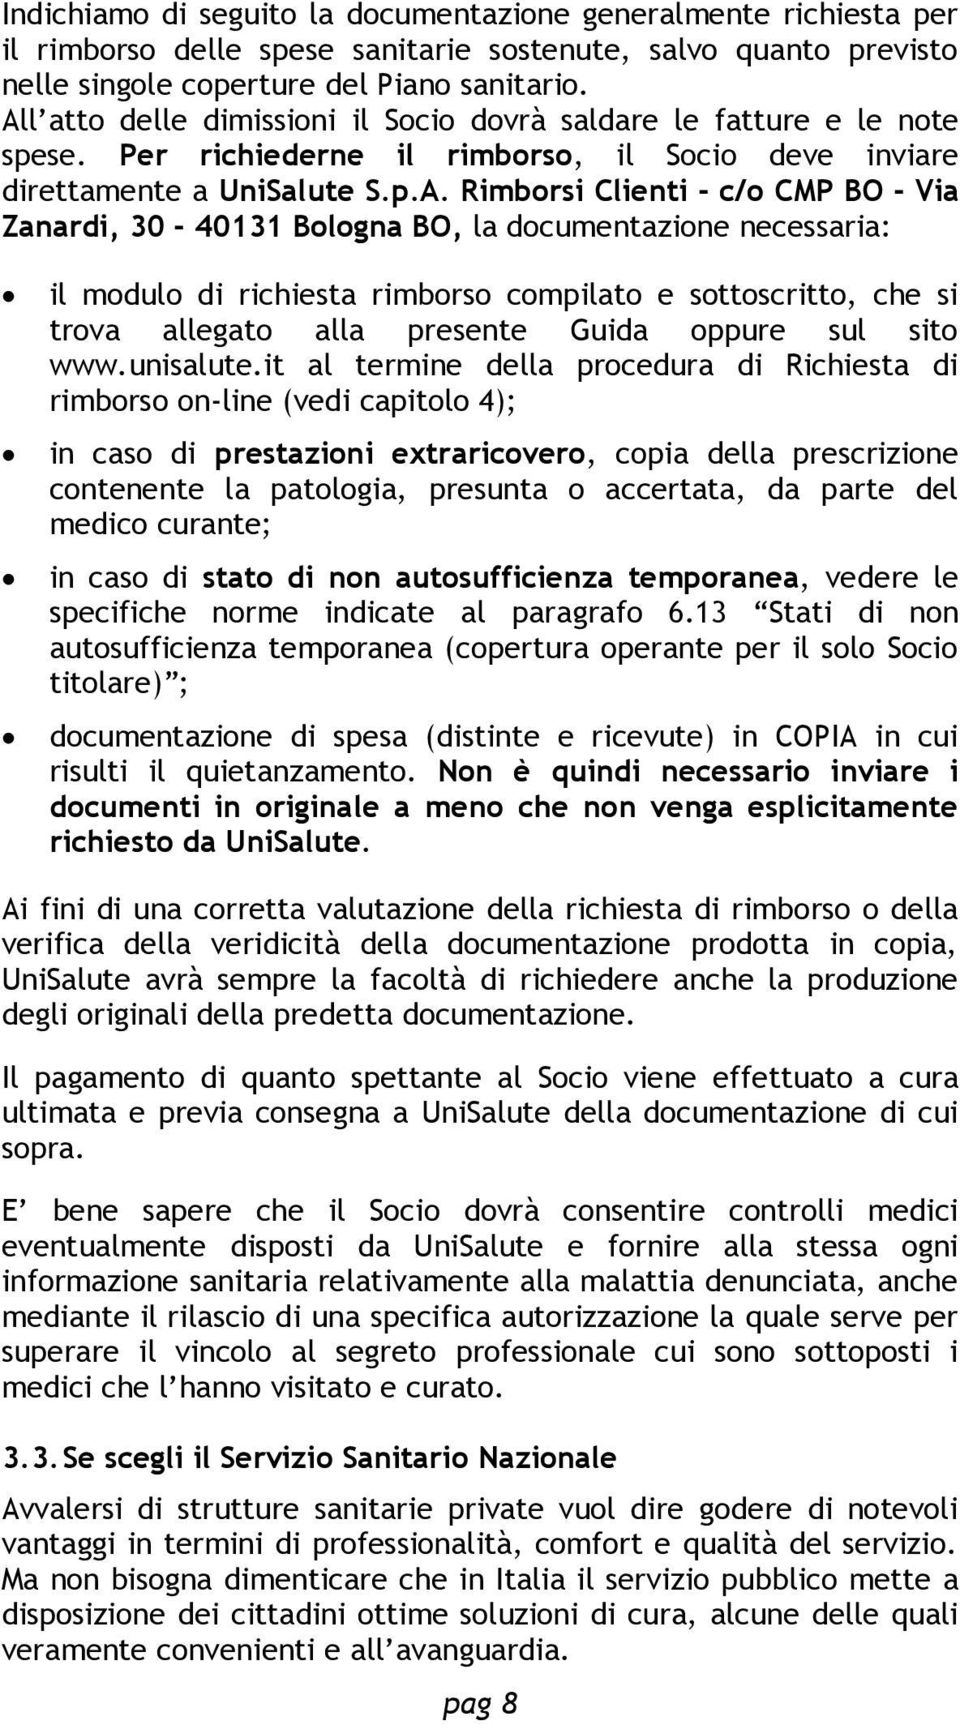 Zanardi, 30-40131 Bologna BO, la documentazione necessaria: il modulo di richiesta rimborso compilato e sottoscritto, che si trova allegato alla presente Guida oppure sul sito www.unisalute.